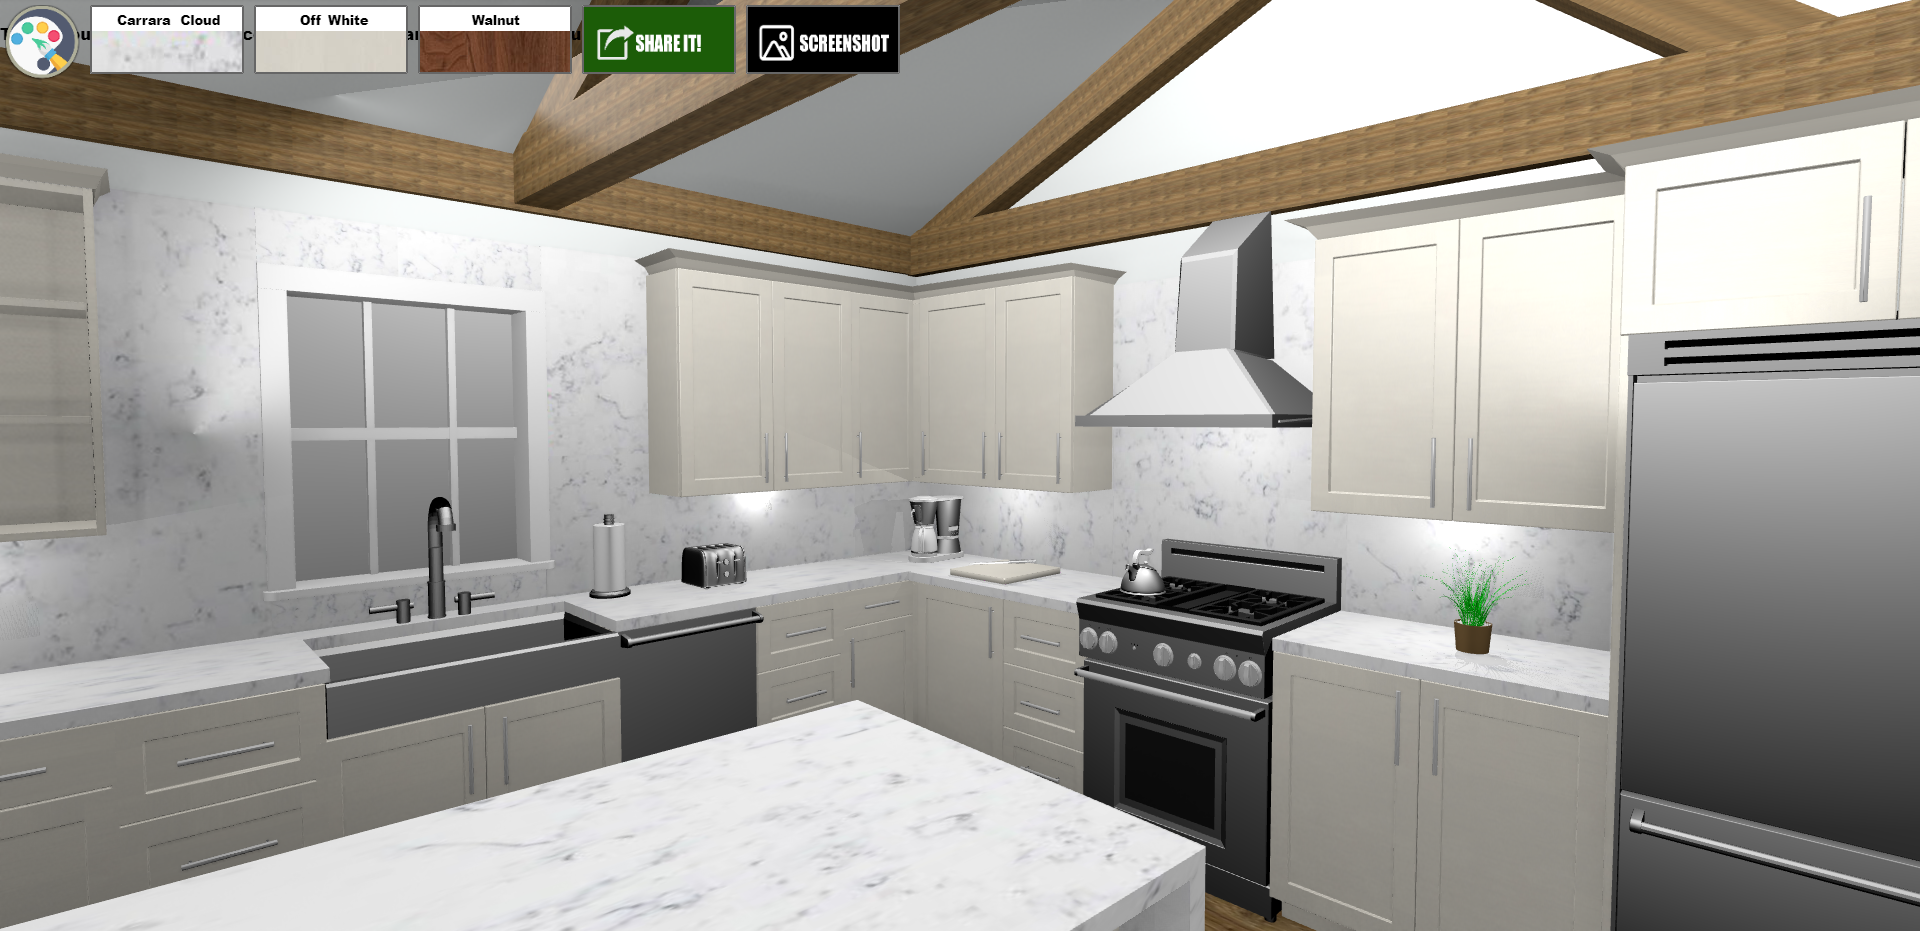 3d Kitchen Design : 